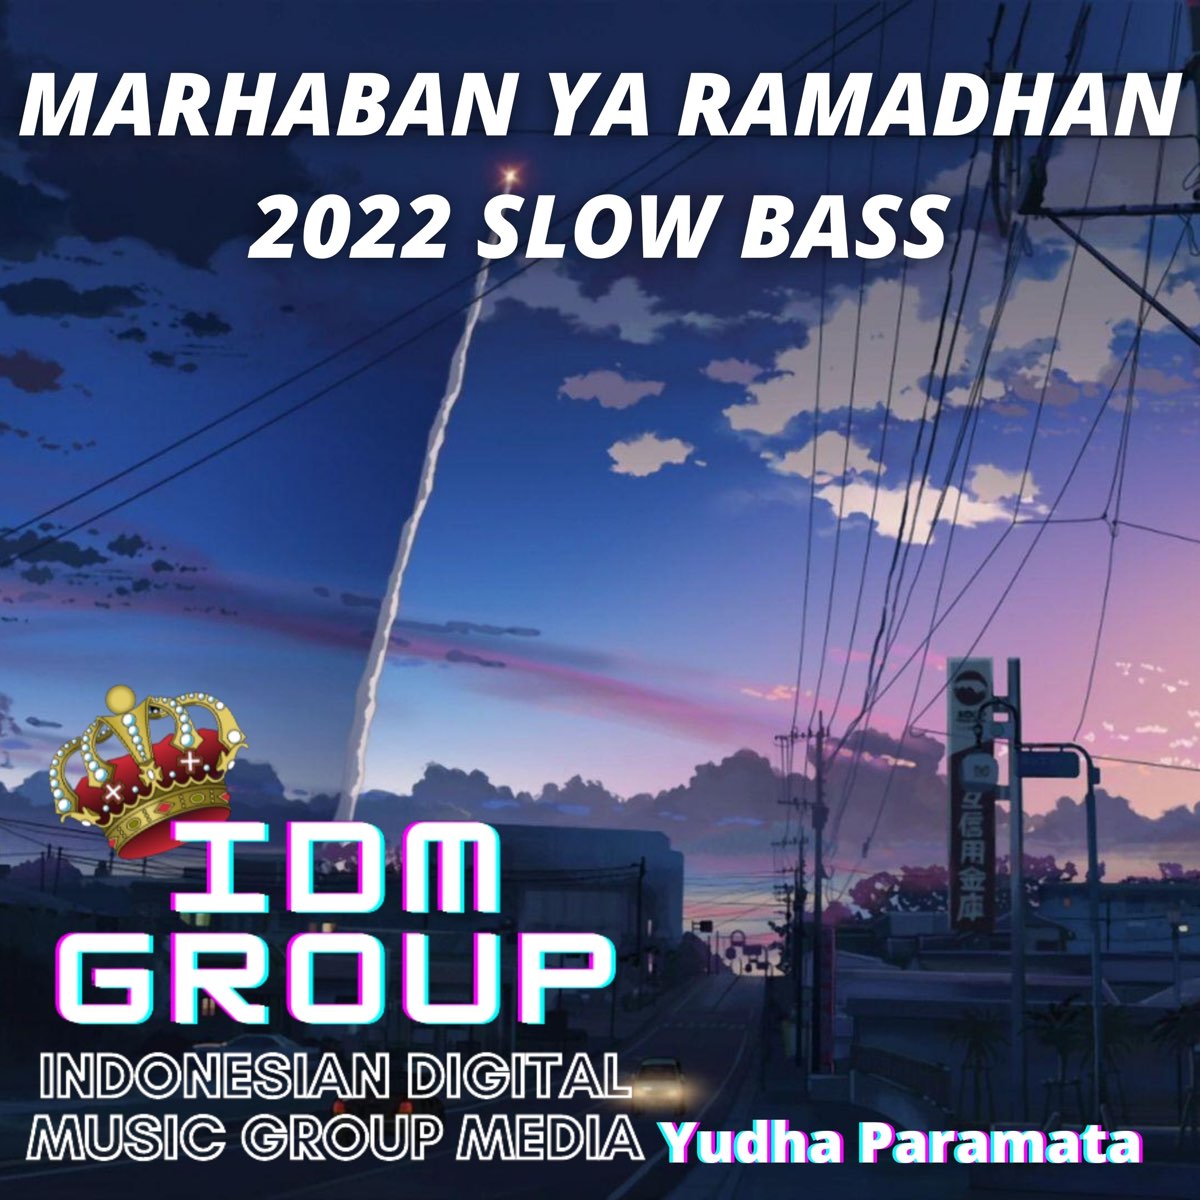 Marhaban ya ramadhan 2022